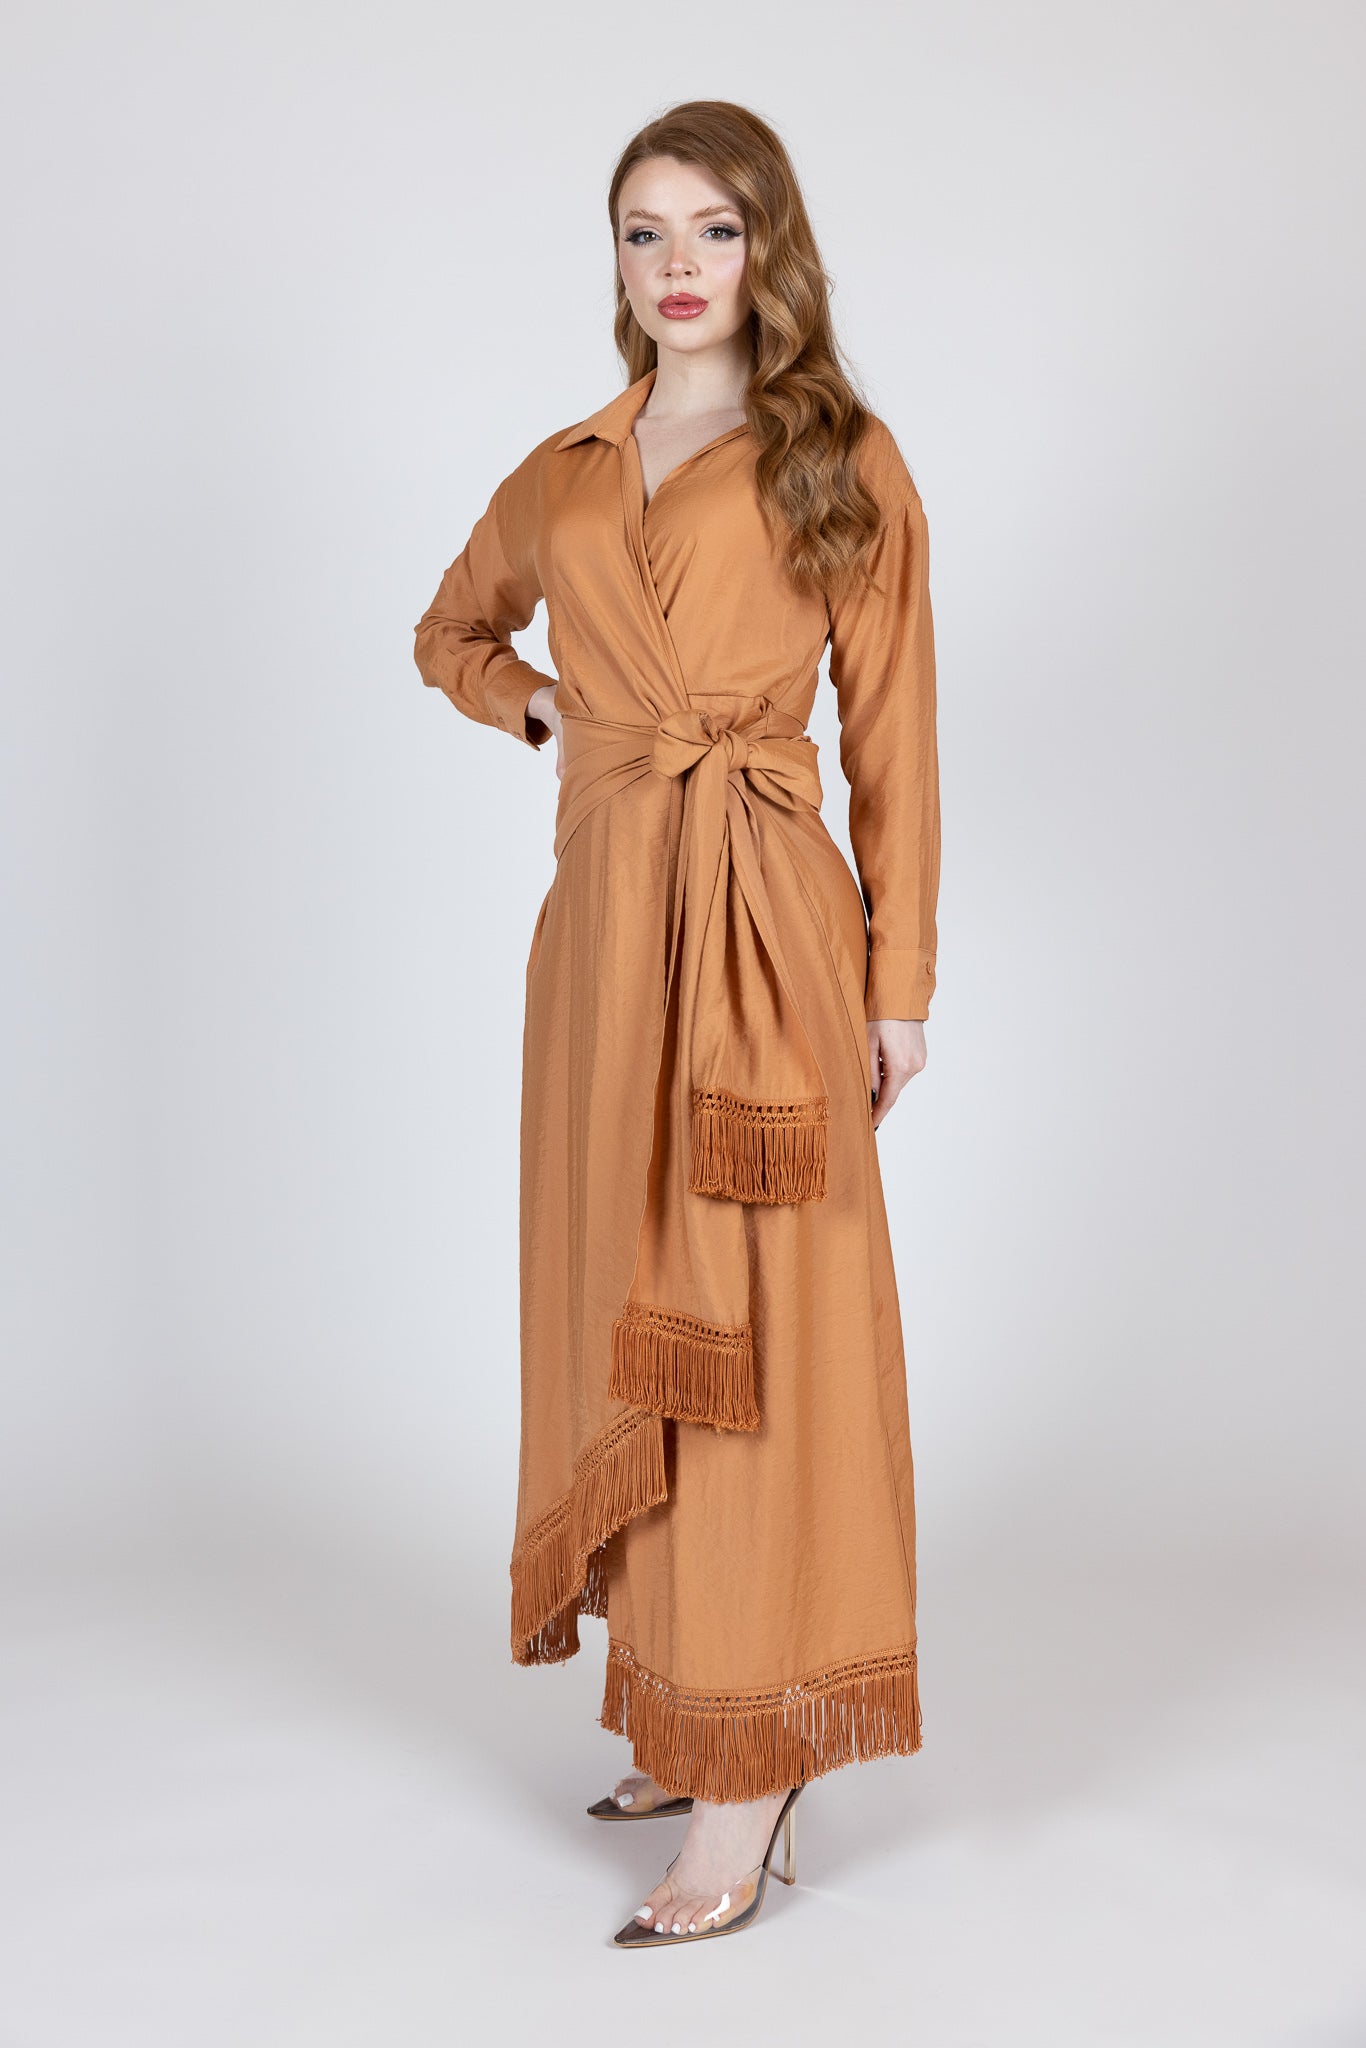 M00004Salmon-dress-abaya